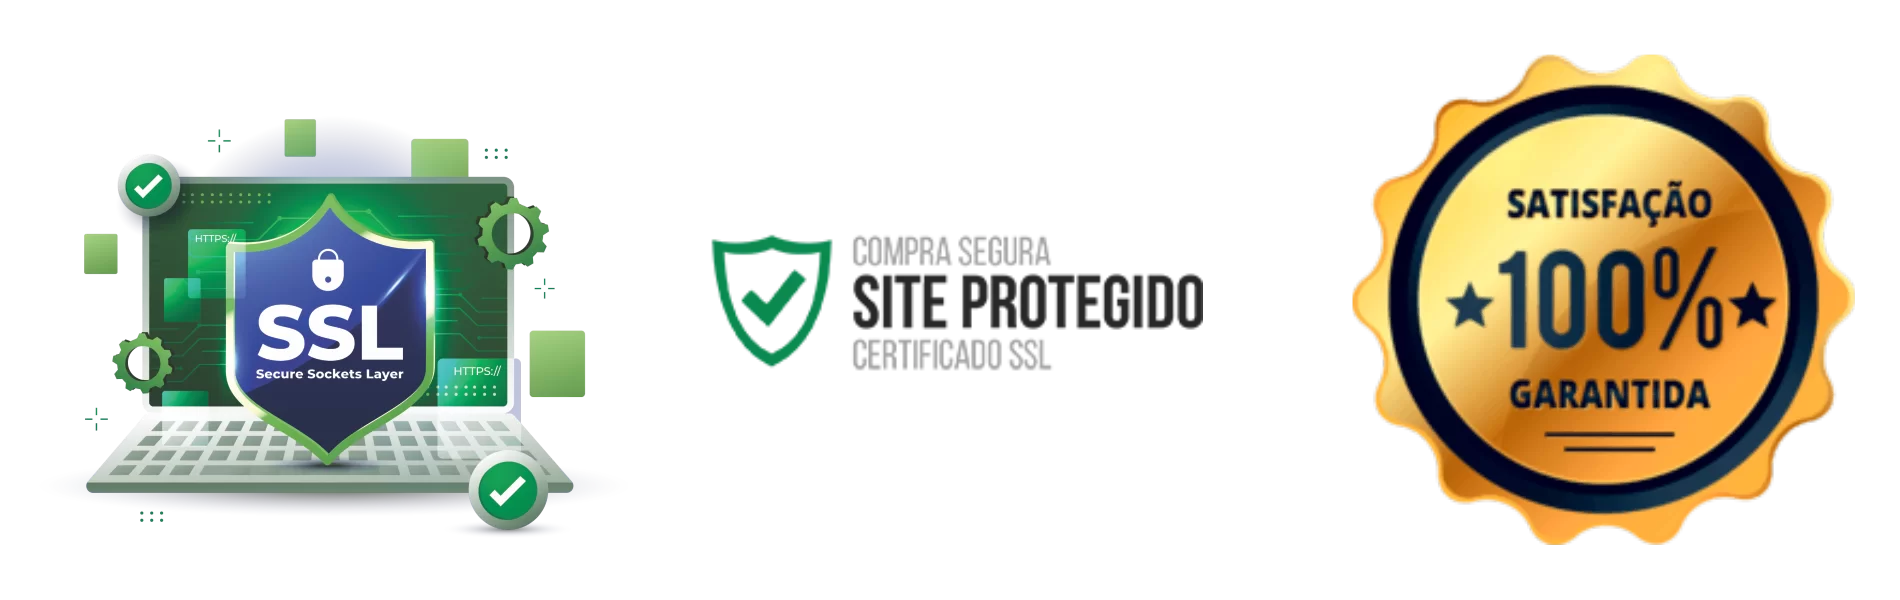 Certificado SSL . Site Protegido. Compra Segura. Satisfação 100% Garantida